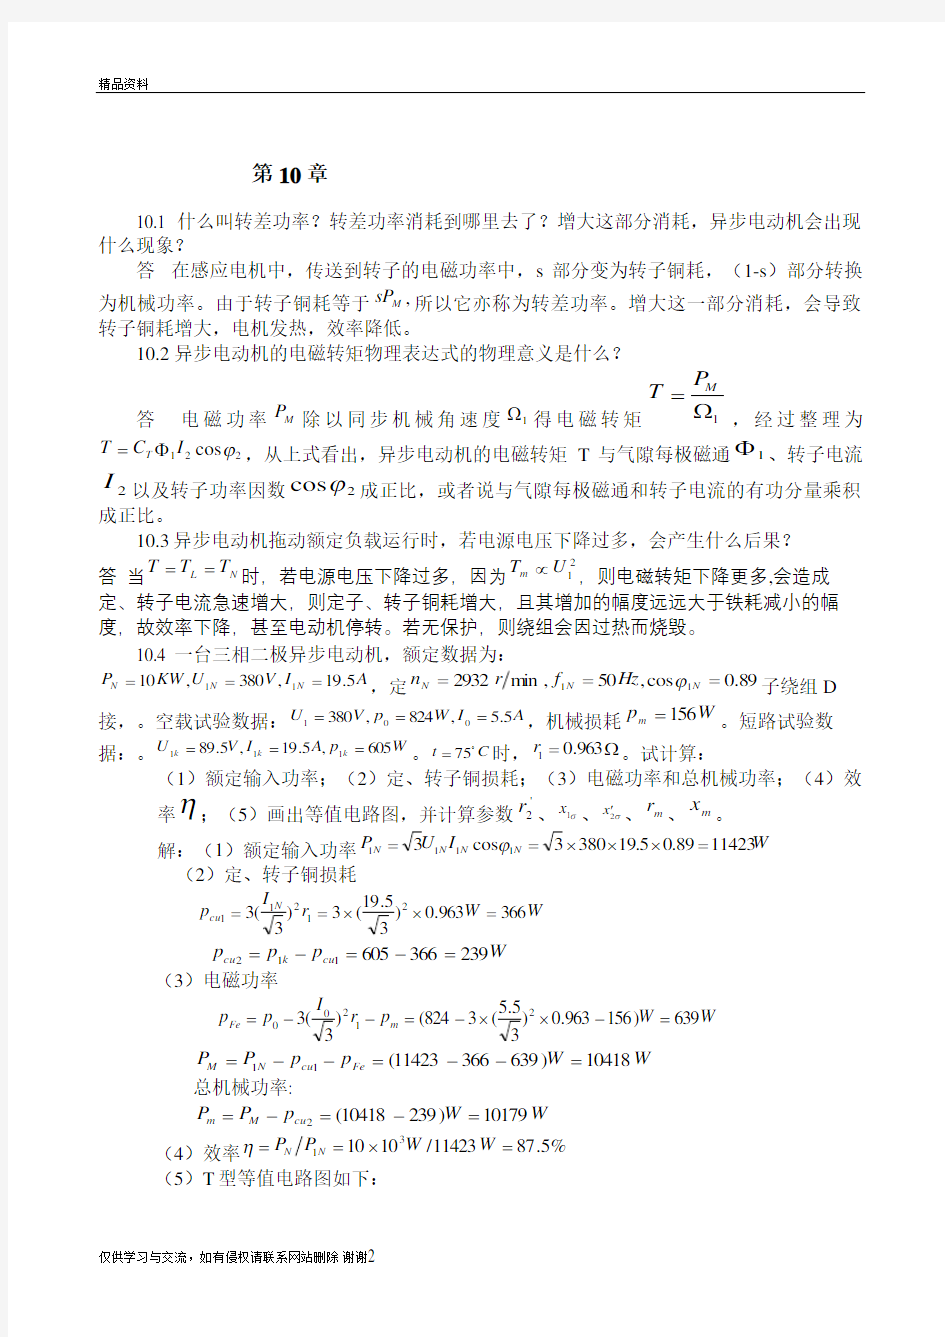 广东海洋大学电机学答案(张广溢)_习题答案(10-20章)精品资料